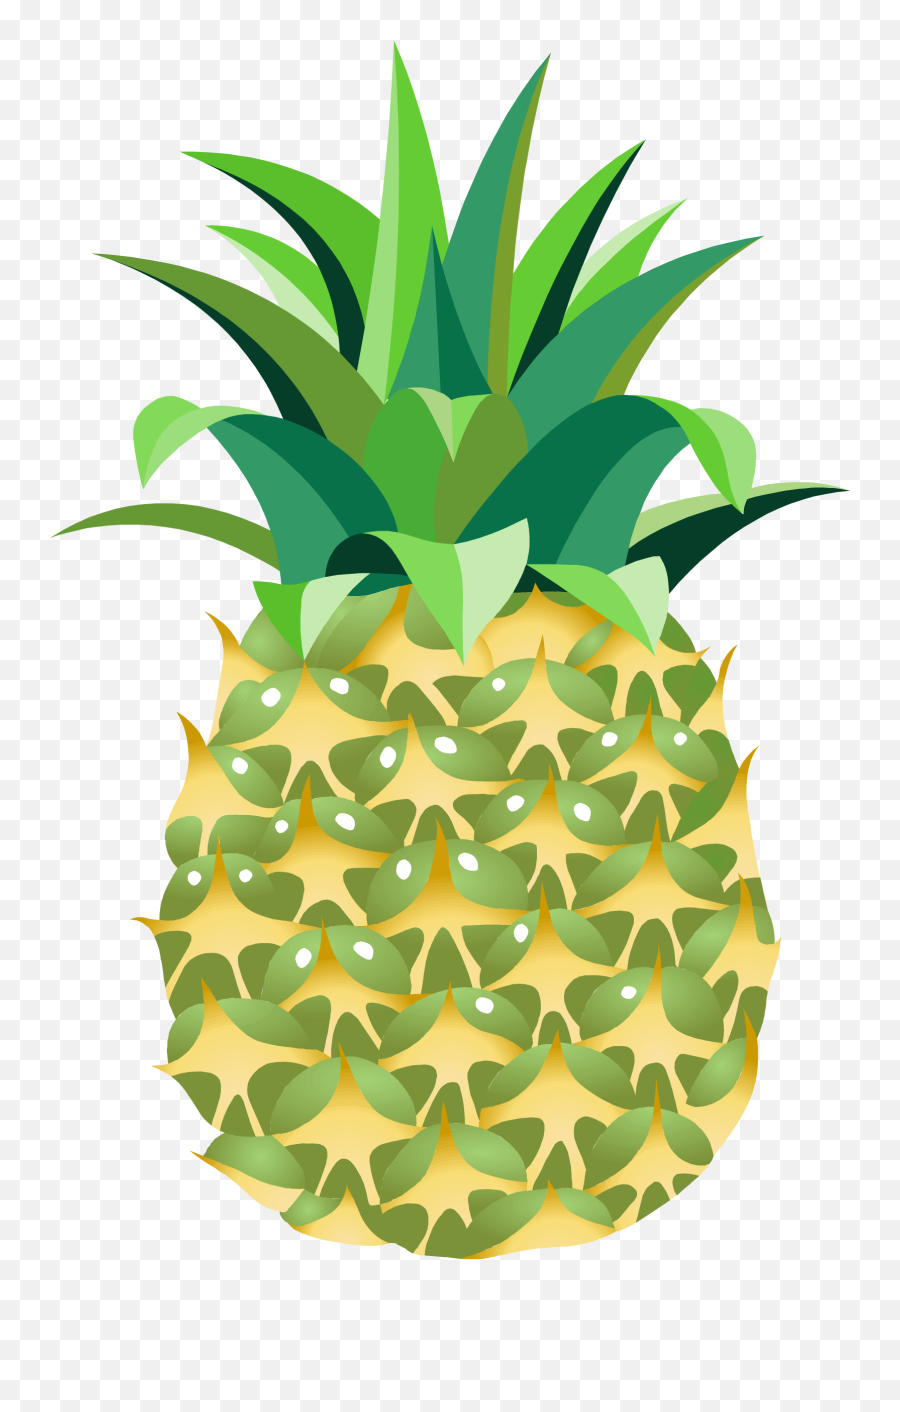 Leaf Clipart Pineapple Leaf Pineapple - Transparent Transparent Background Clip Art Pineapple Cartoon Emoji,Pineapple Pizza Emoji